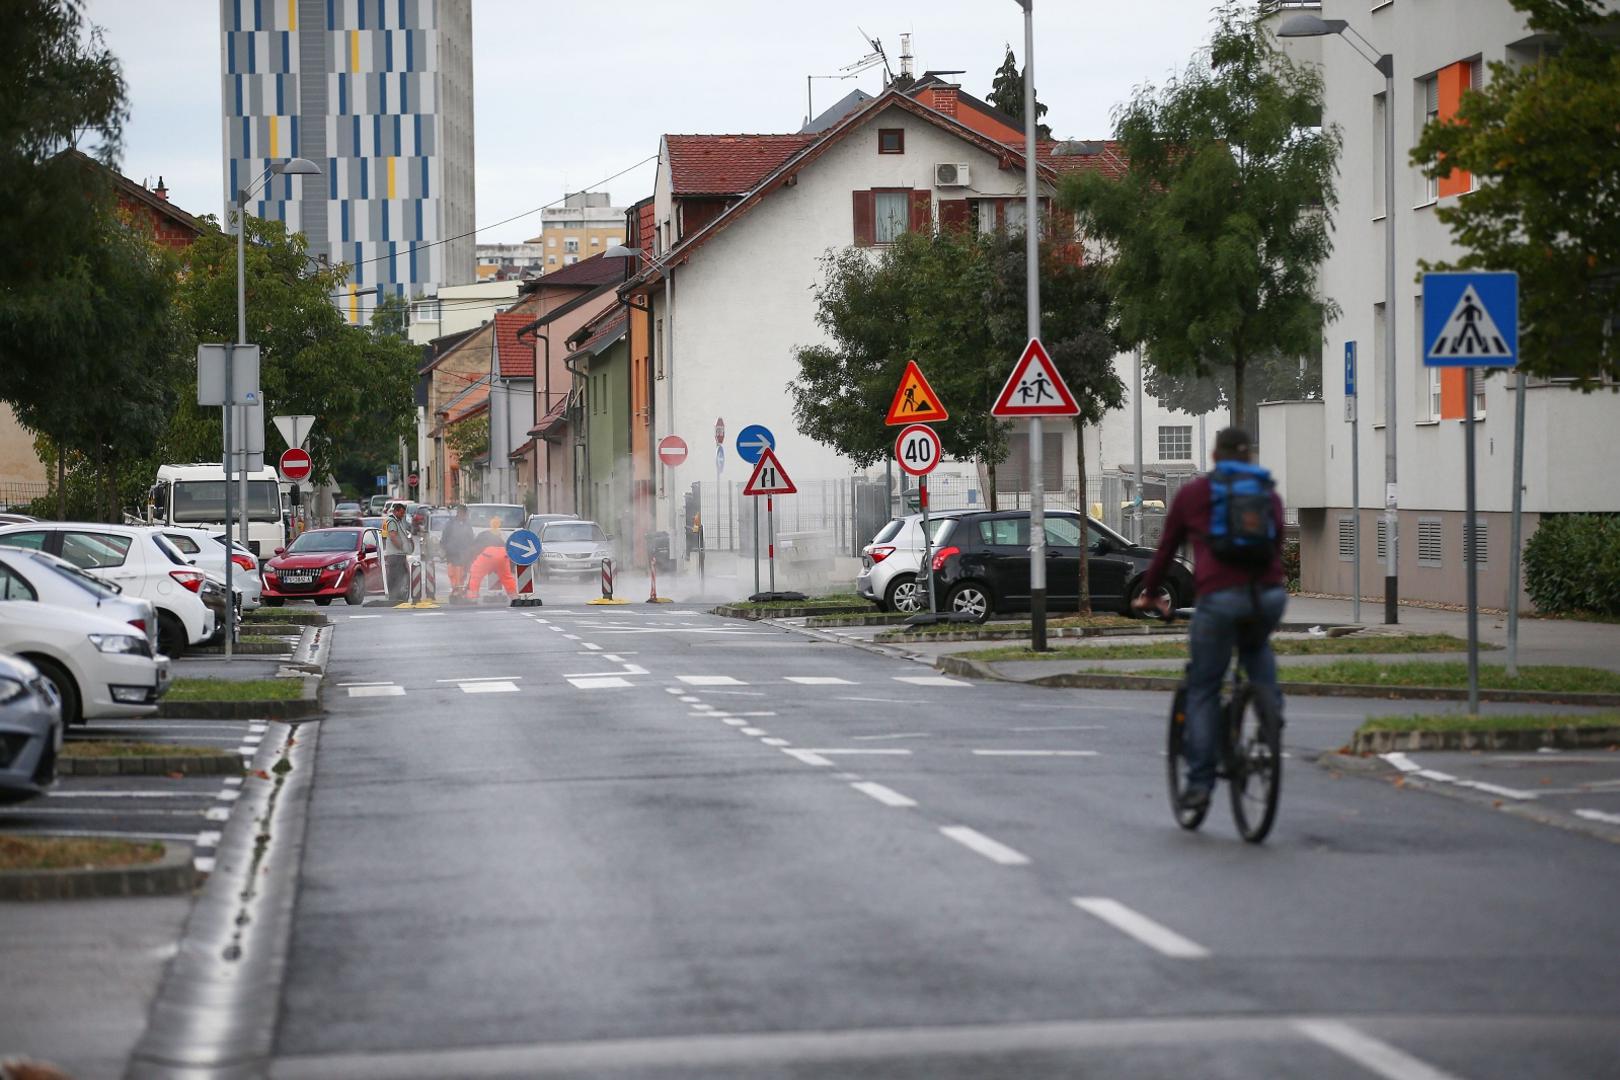 30.09.2021., Zagreb - Radovi na puknucu cijevi na Selskoj ulici nisu prouzrocili velike guzve tijekom jutra.
Photo: Matija Habljak/PIXSELL